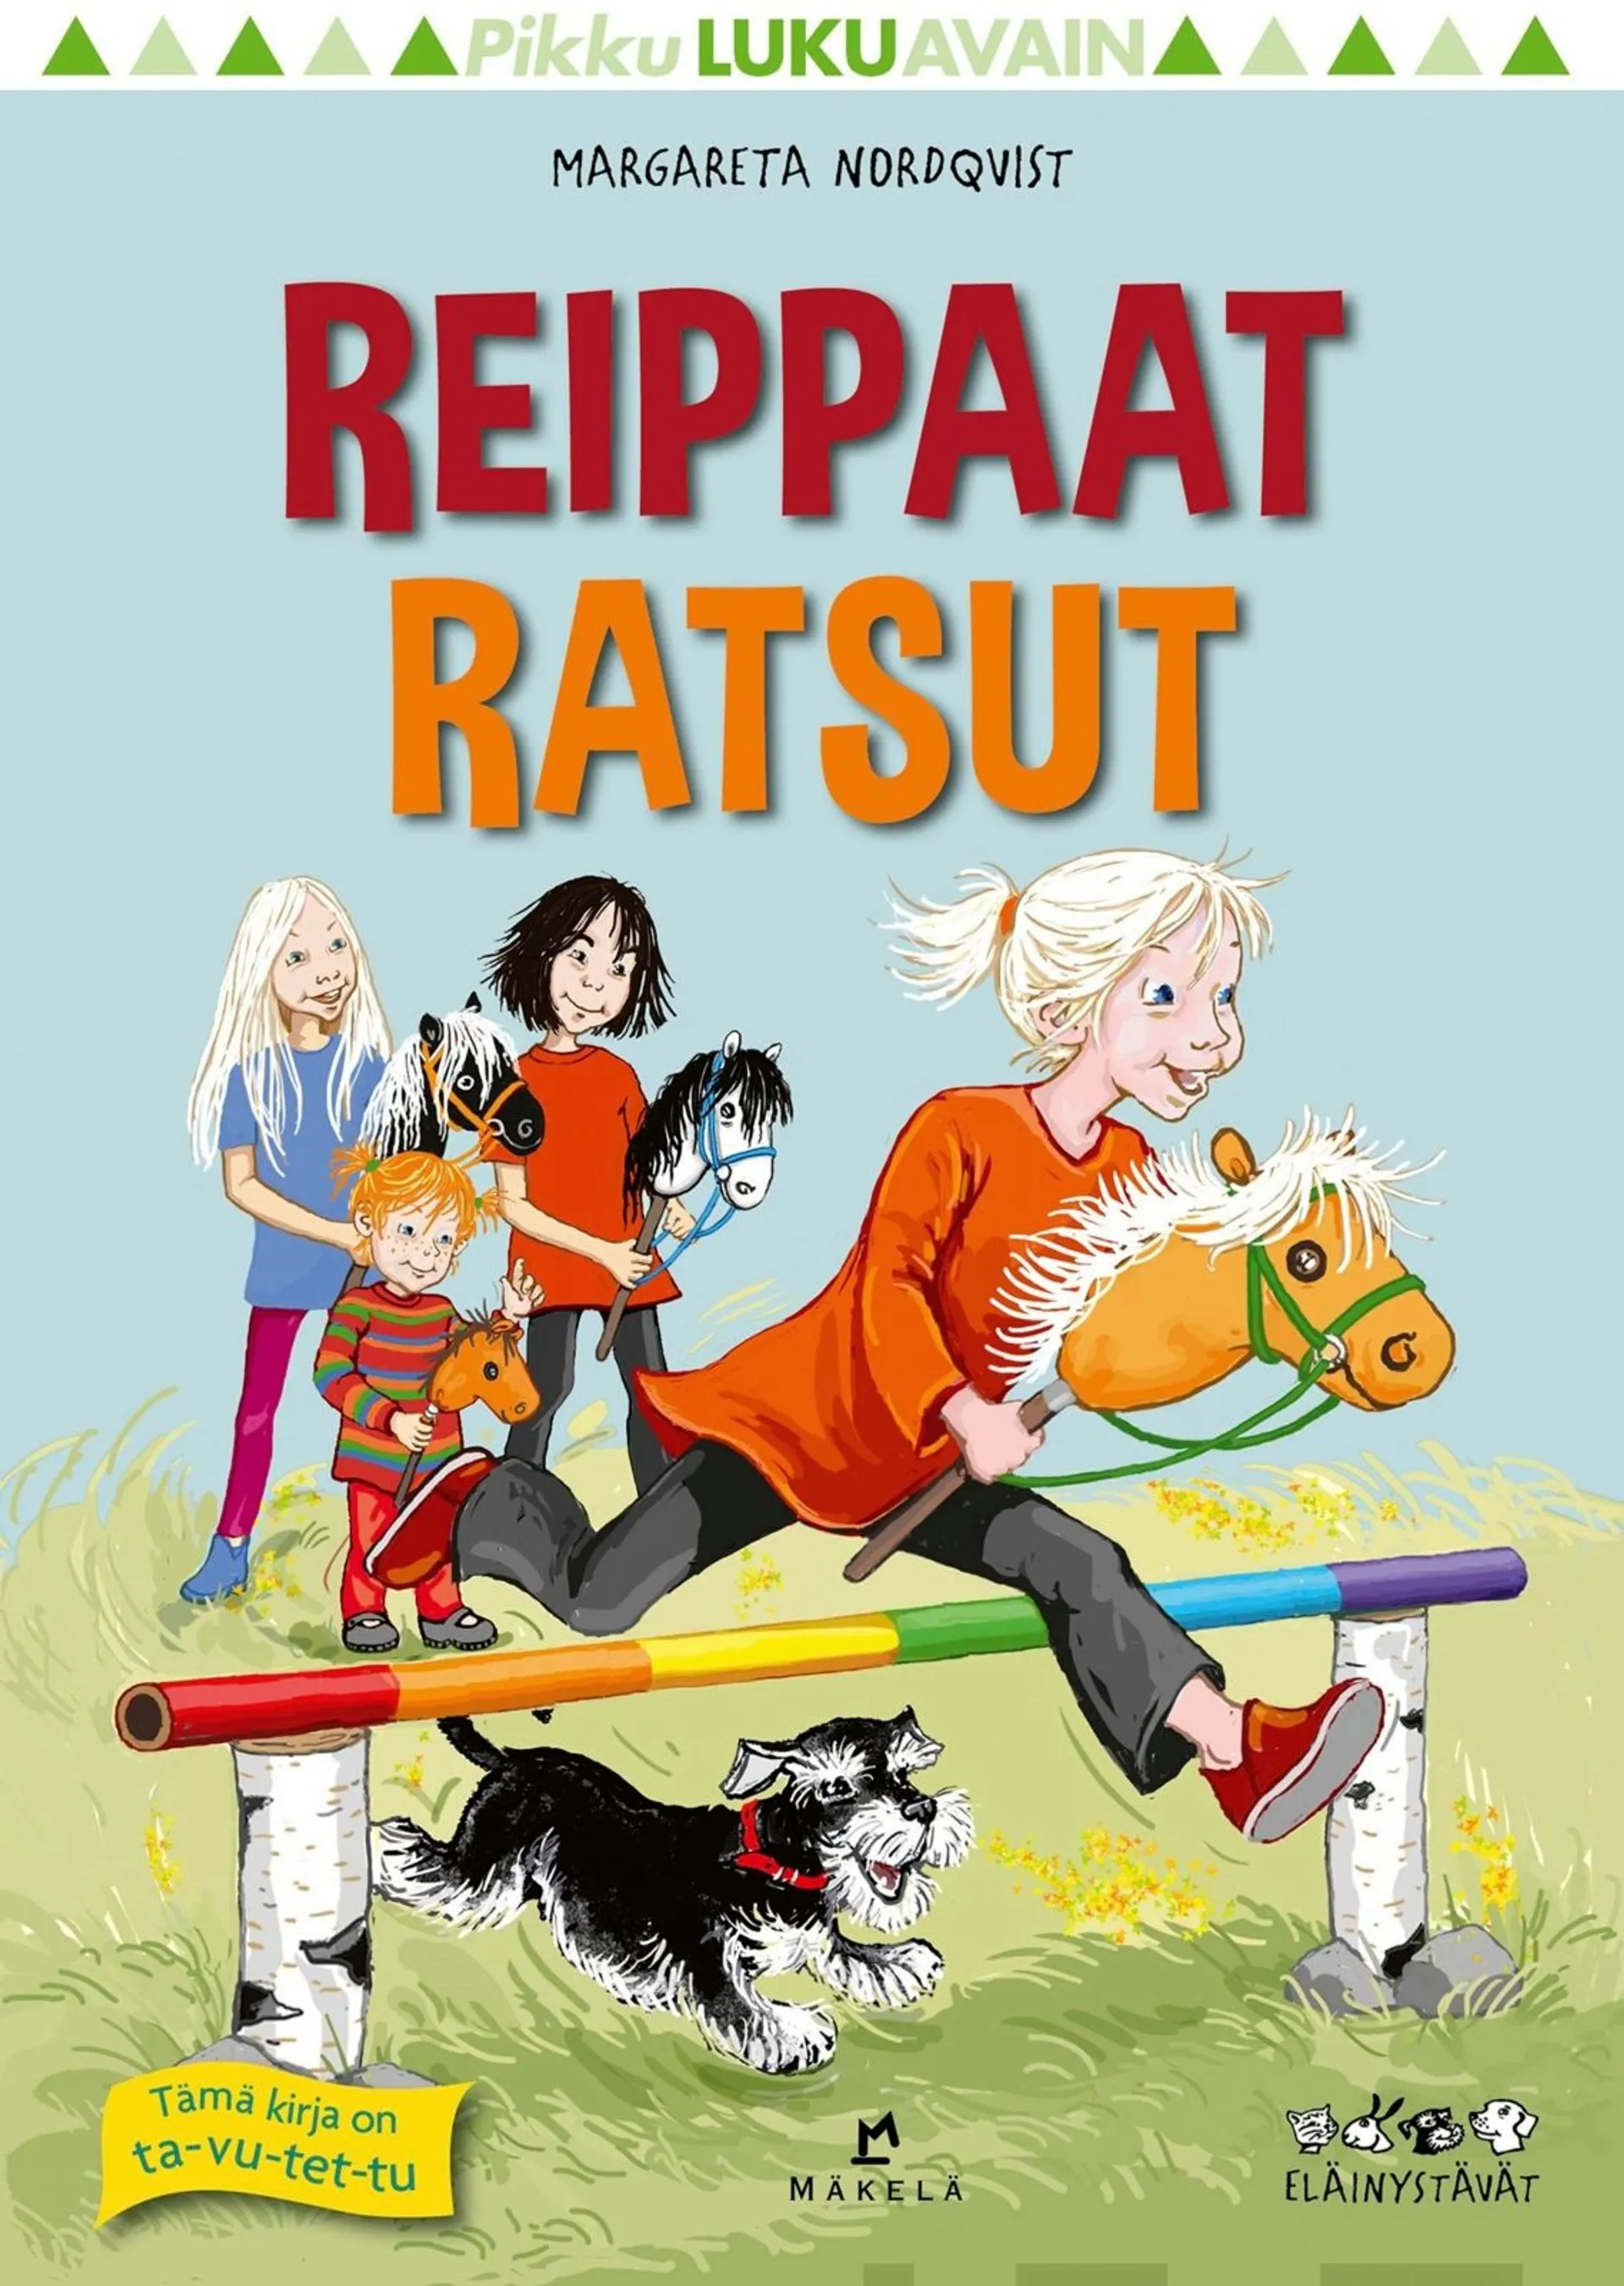 Nordqvist, Reippaat ratsut - Extra lätt att läsa, Djurkompisar